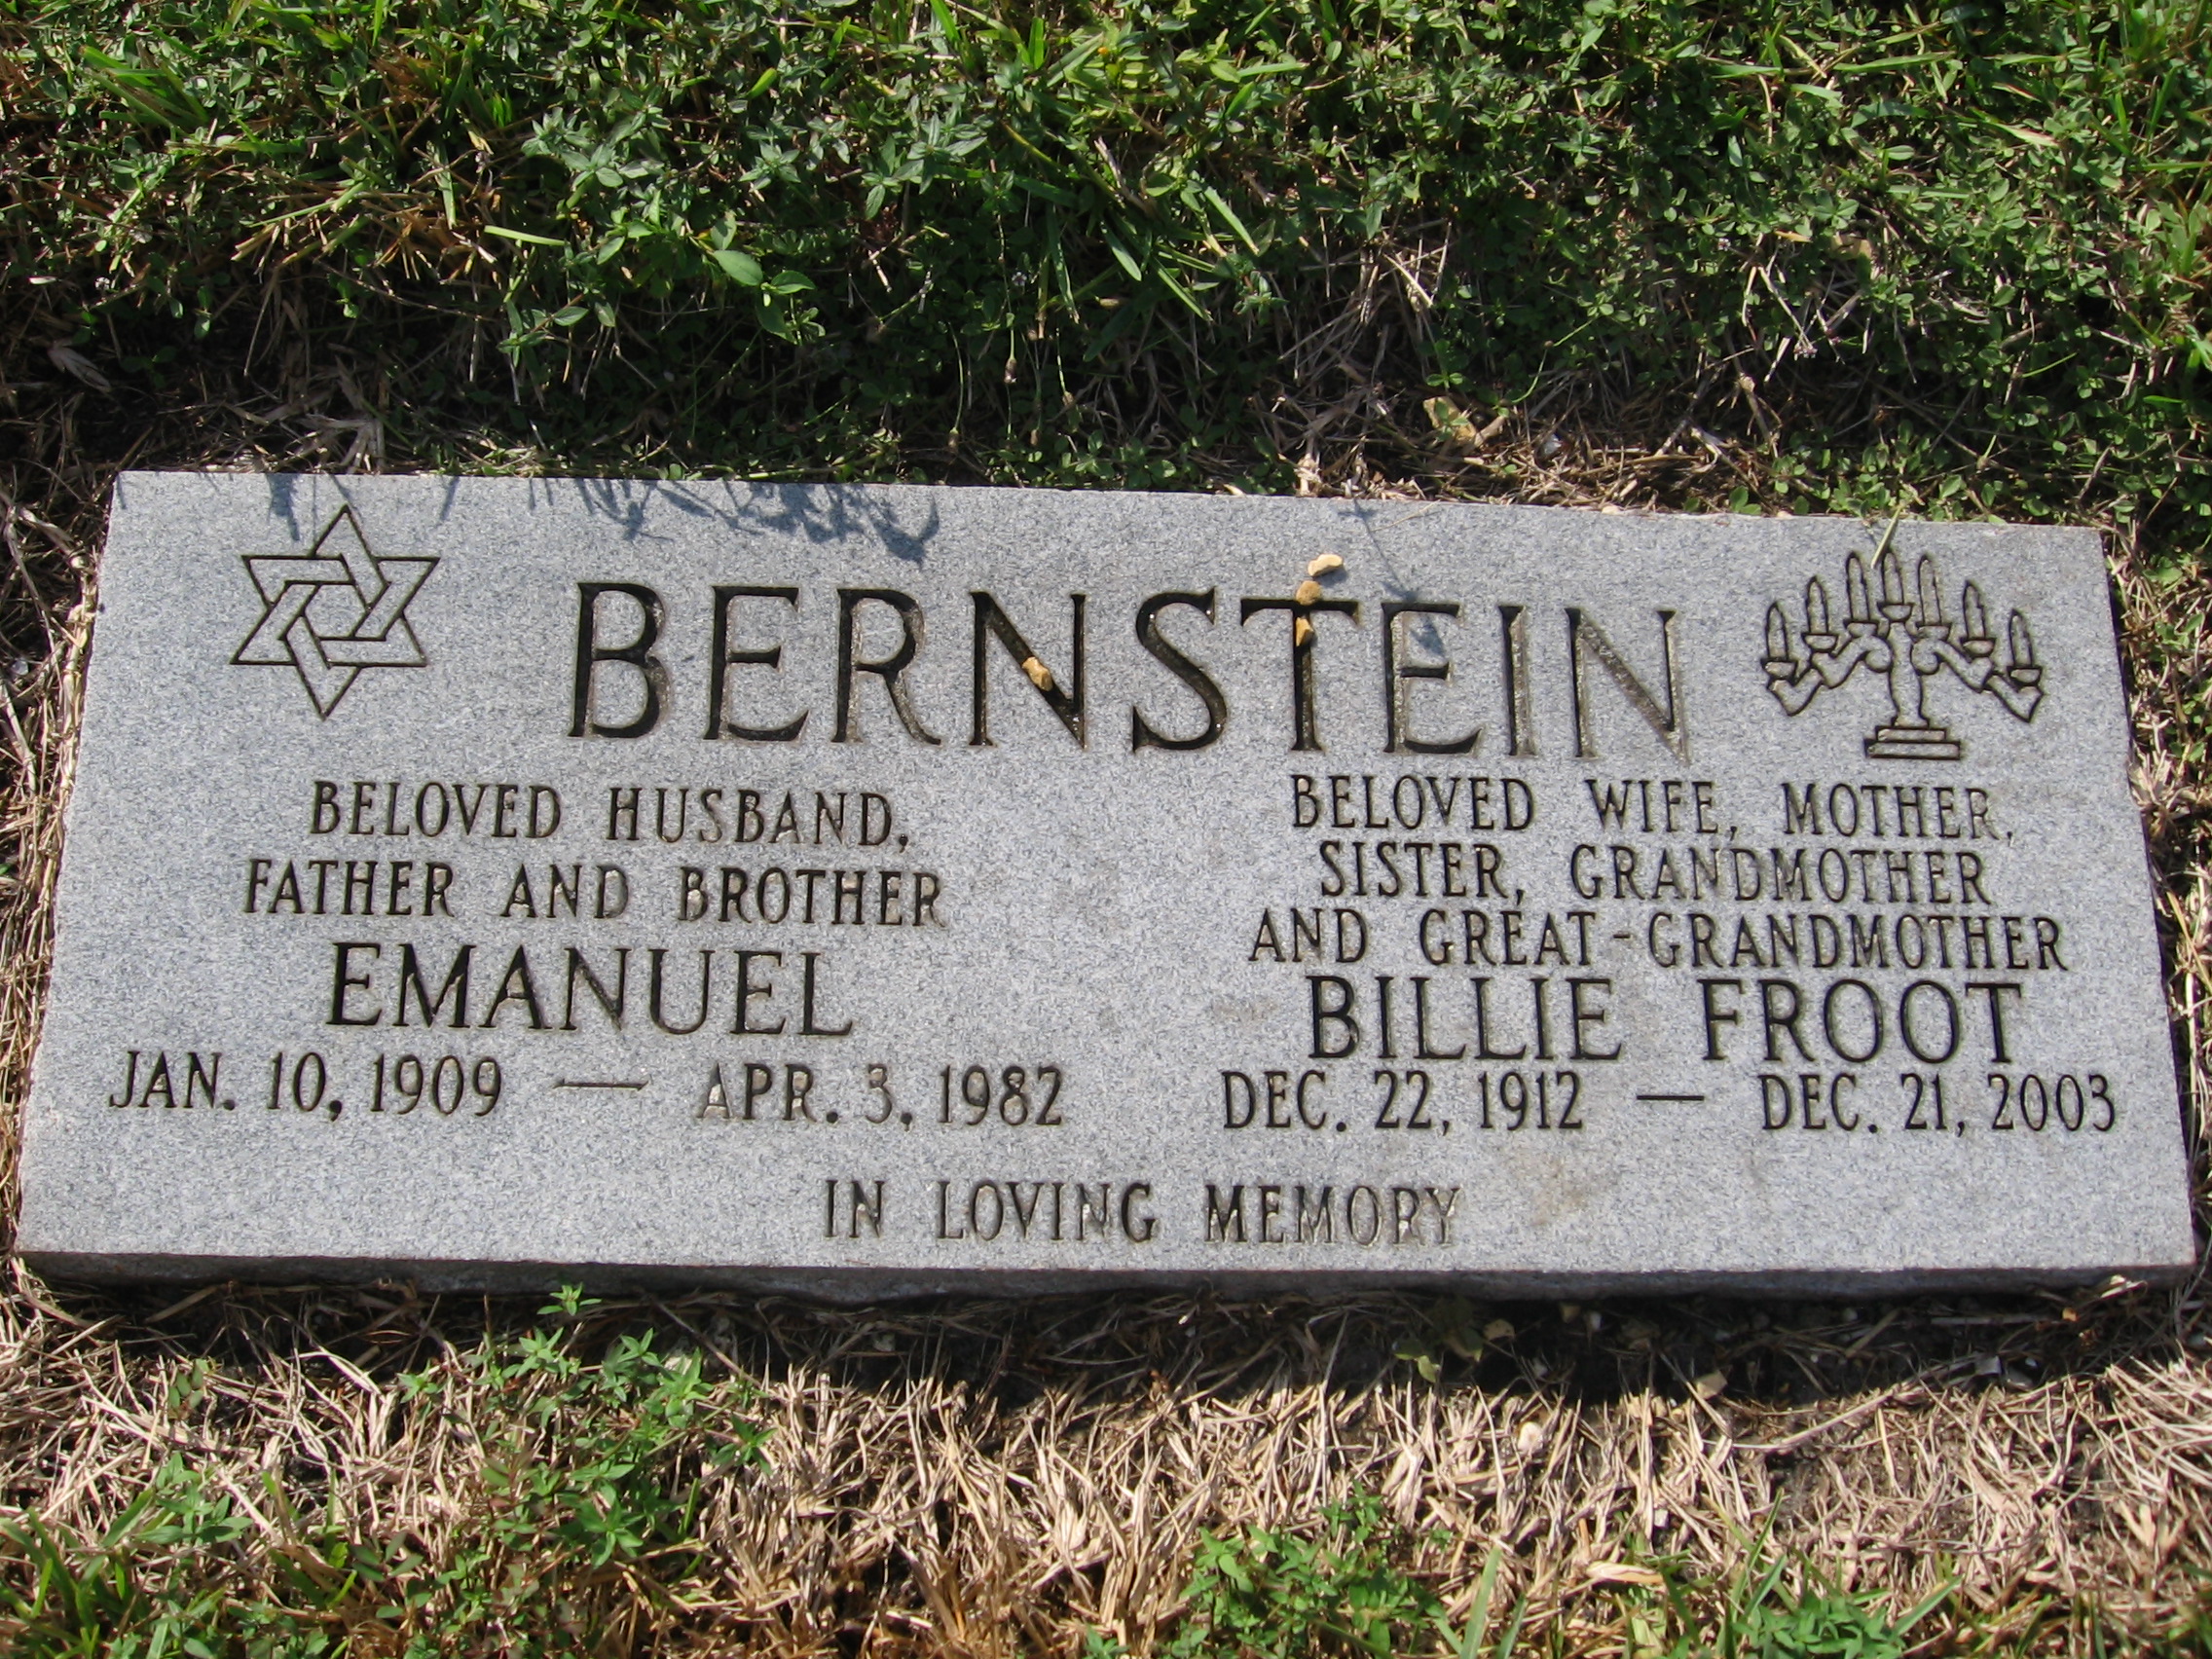 Emanuel Bernstein